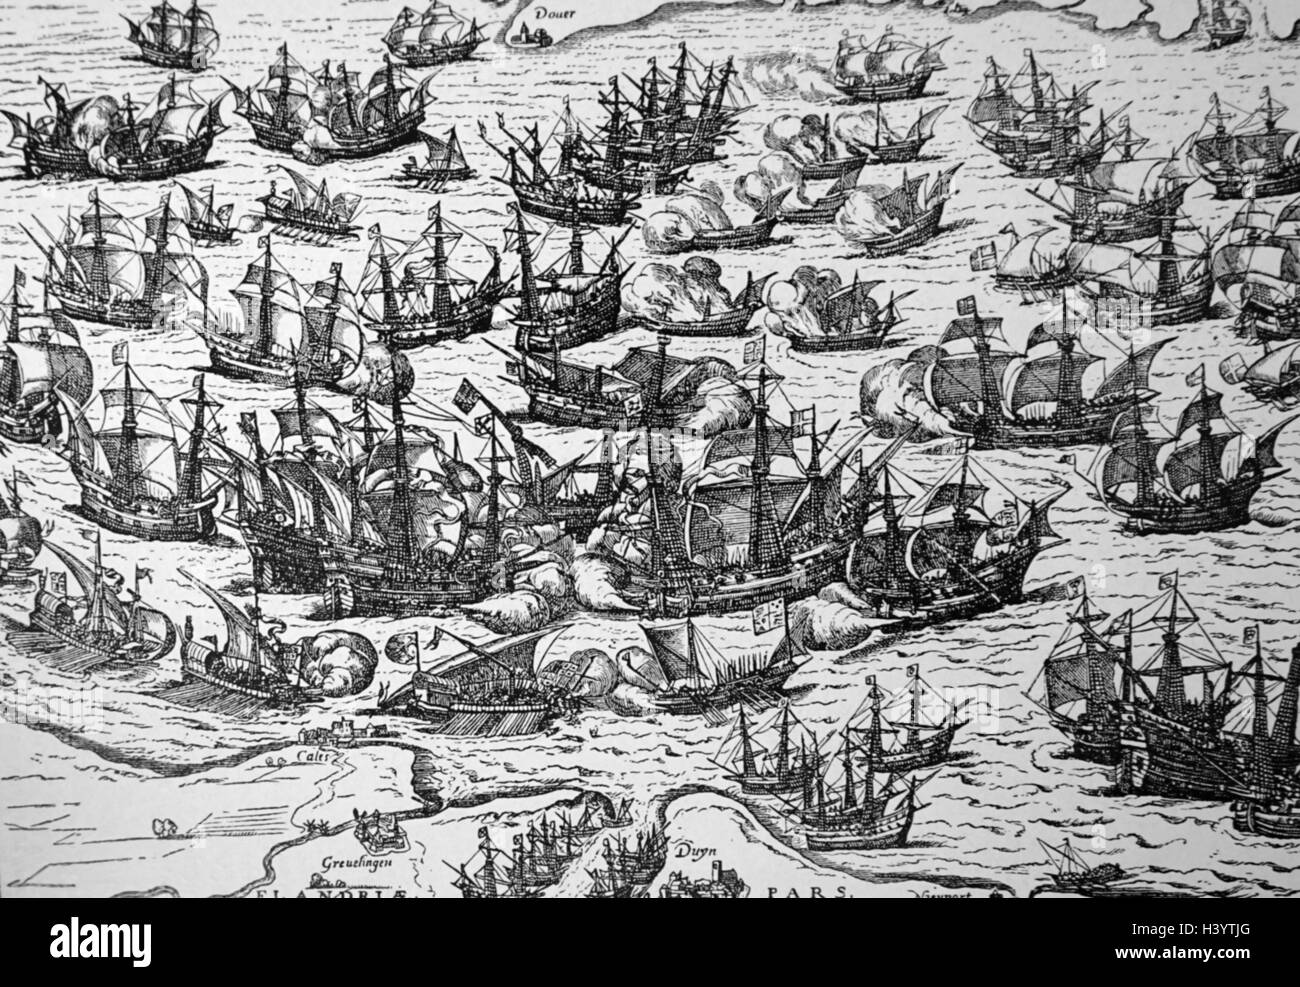 Gravur mit dem Titel "Die unbesiegbare Armada" von Franz Hogenberg (1535-1590) eine Flämische und deutscher Maler, Kupferstecher und Kartenhersteller. Vom 16. Jahrhundert Stockfoto